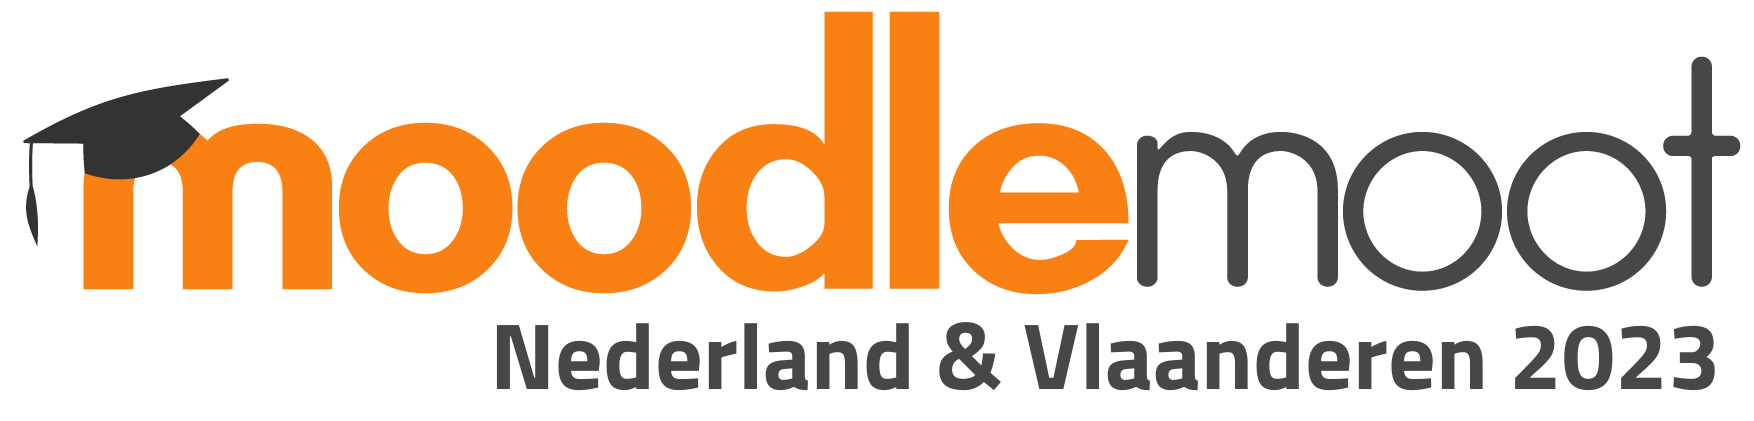 Moodlemoot 2023 voor Nederland en Vlaanderen